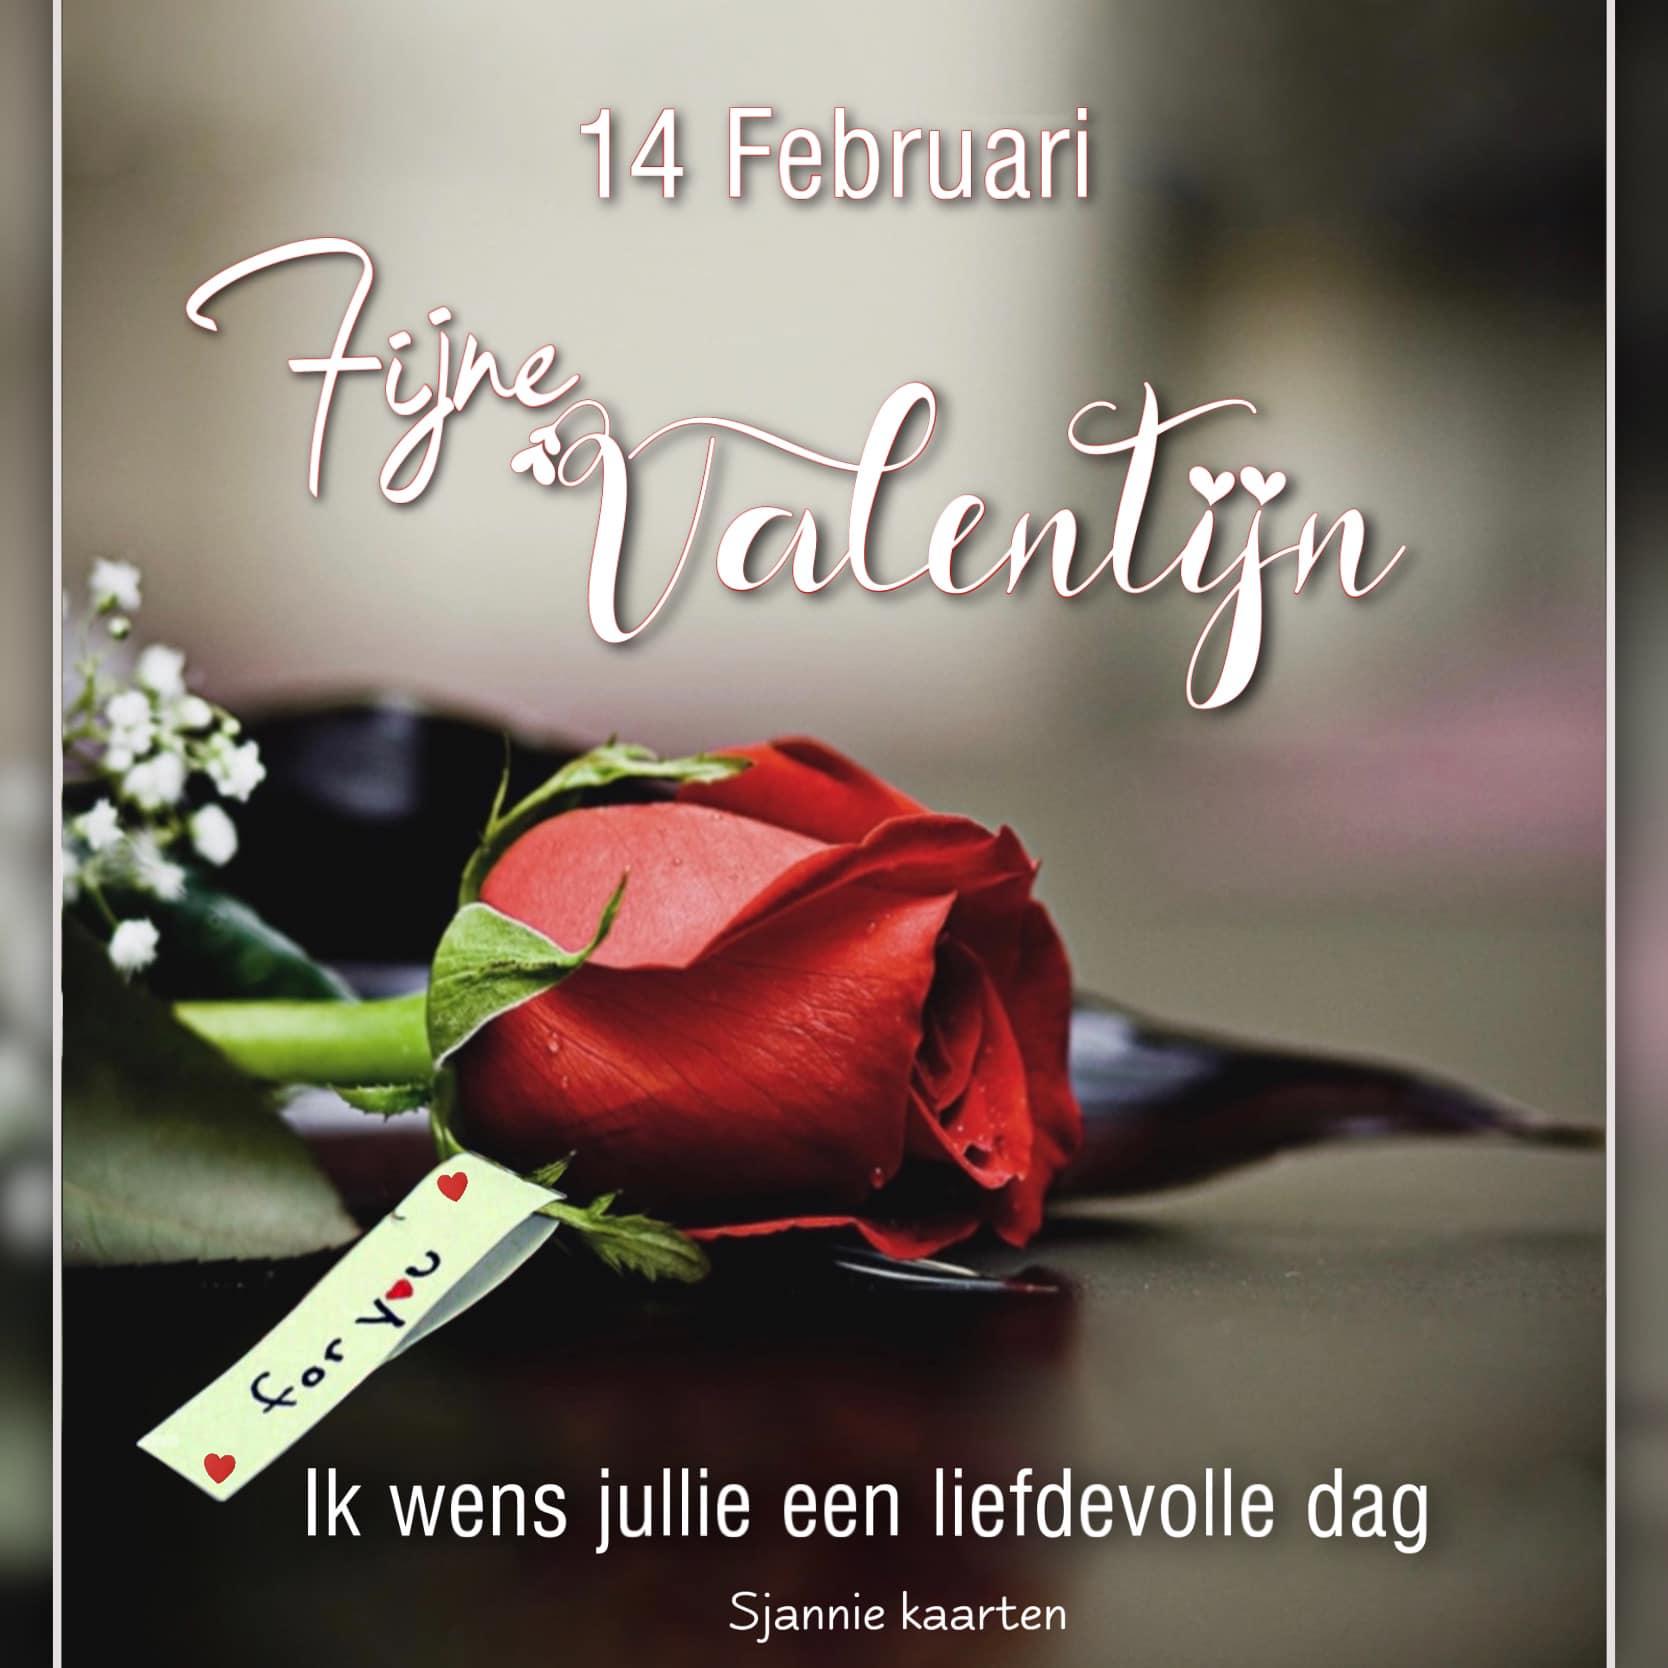 14 Februari. Fijne Valentijn. Ik wens jullie een liefdevolle dag.